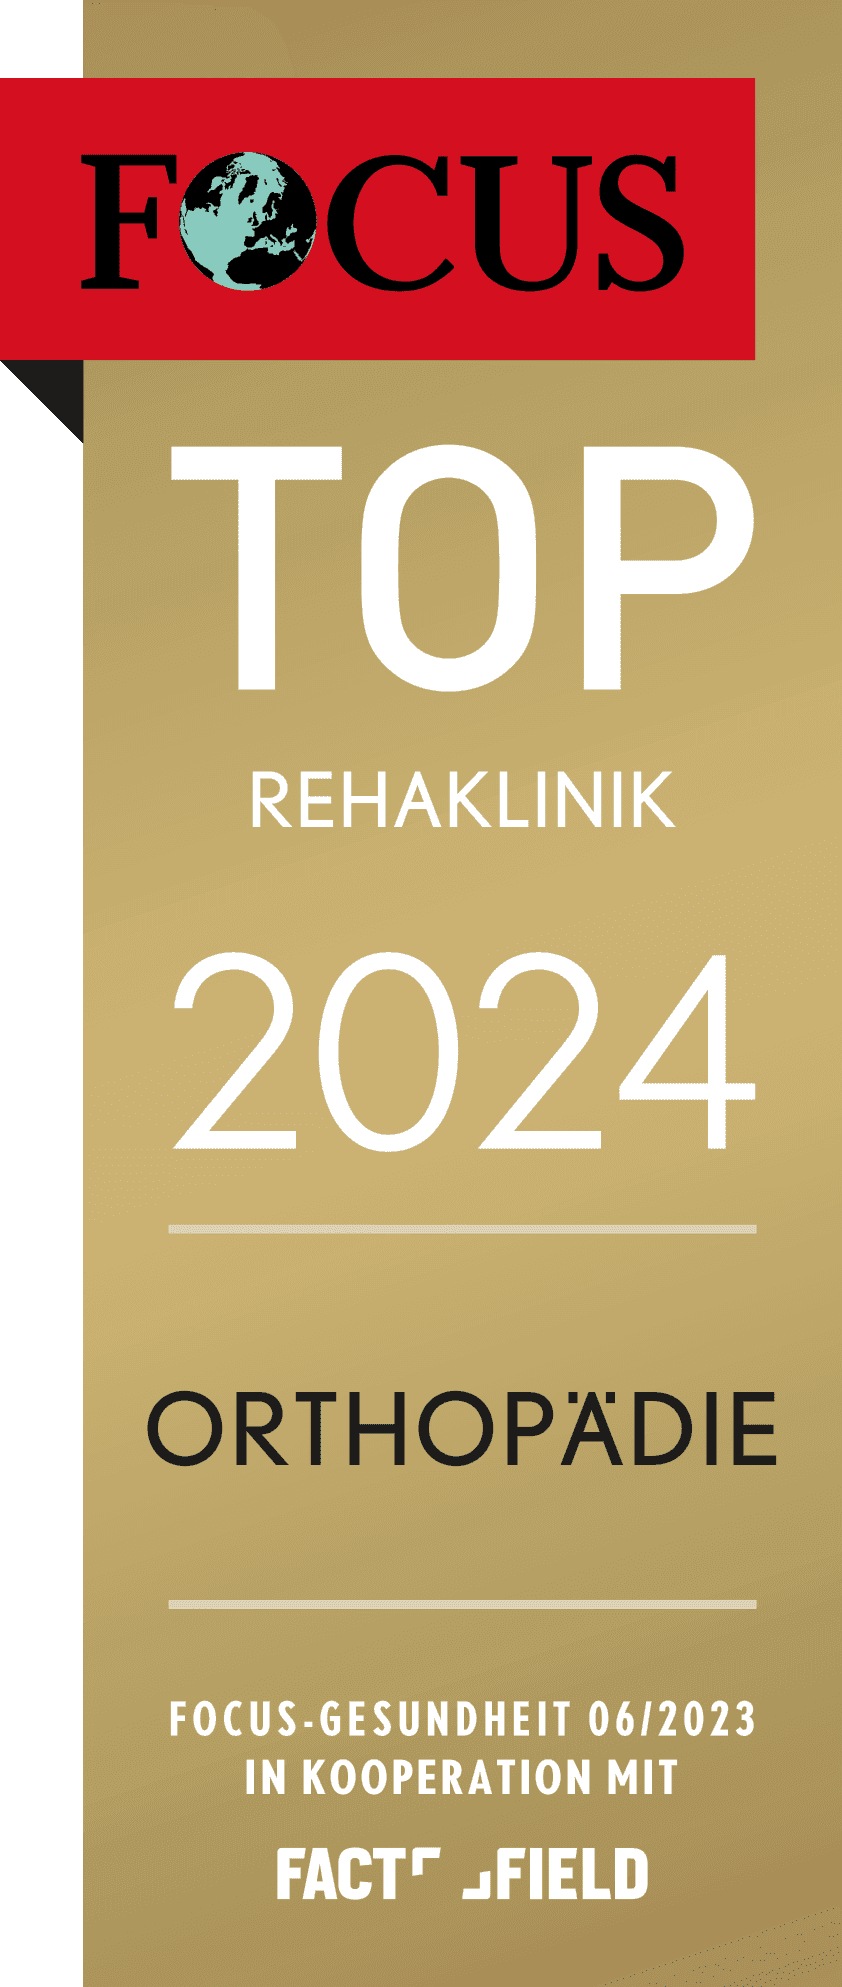 Focus-Siegel der Rehaklinik Hohenelse für das Jahr 2024 als TOP Rehaklinik im Bereich Orthopädie